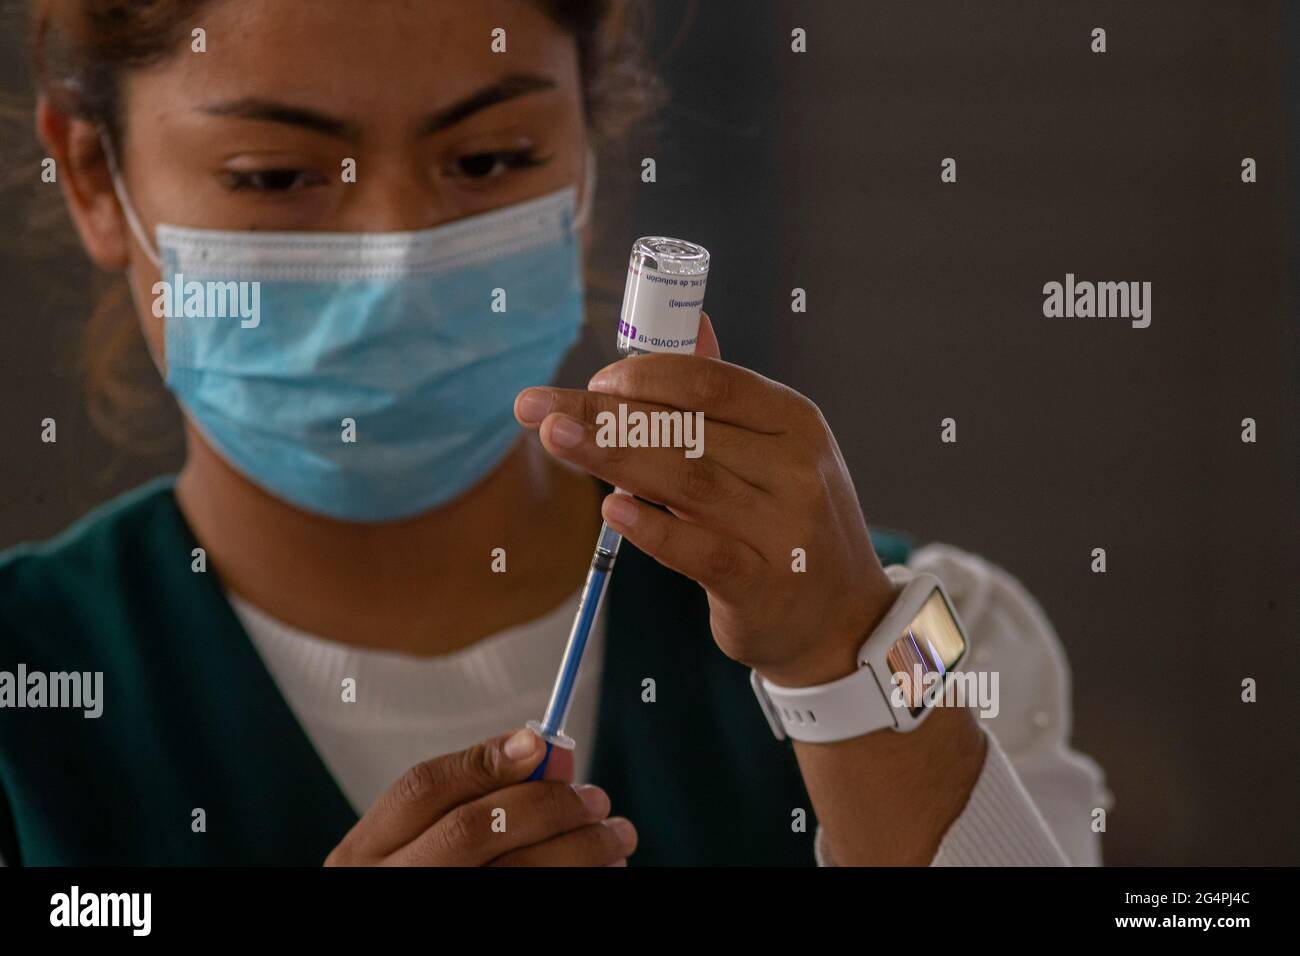 CIUDAD DE MÉXICO, MÉXICO - 22 DE JUNIO de 2021: Una enfermera prepara una dosis de AstraZeneca, durante la vacunación masiva a ciudadanos de 40 t0 49 años en el Palacio de los Deportes el 22 de junio de 2021 en Ciudad de México, México. Foto de stock